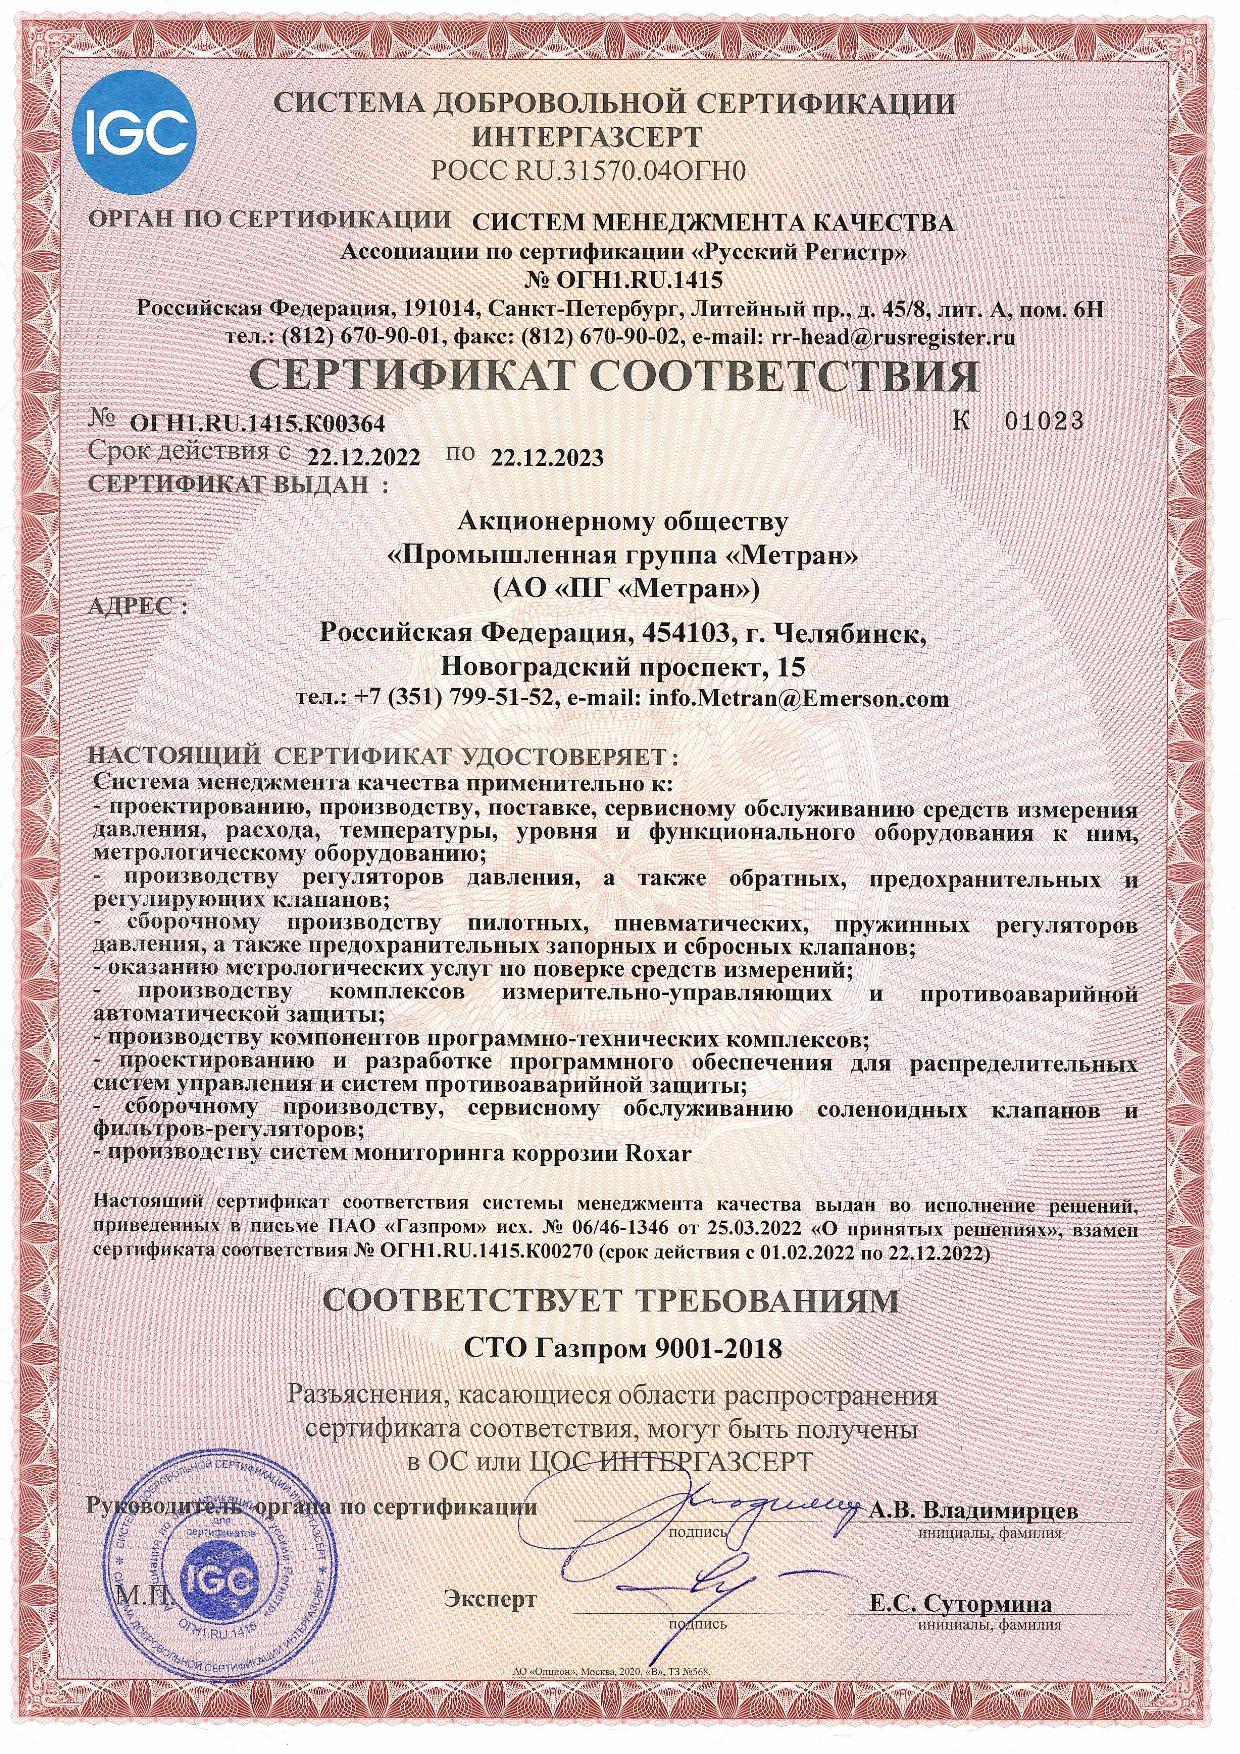 Сертификат соответствия СМК ИГС с 22.12.2022 по 22.12.2023.jpg